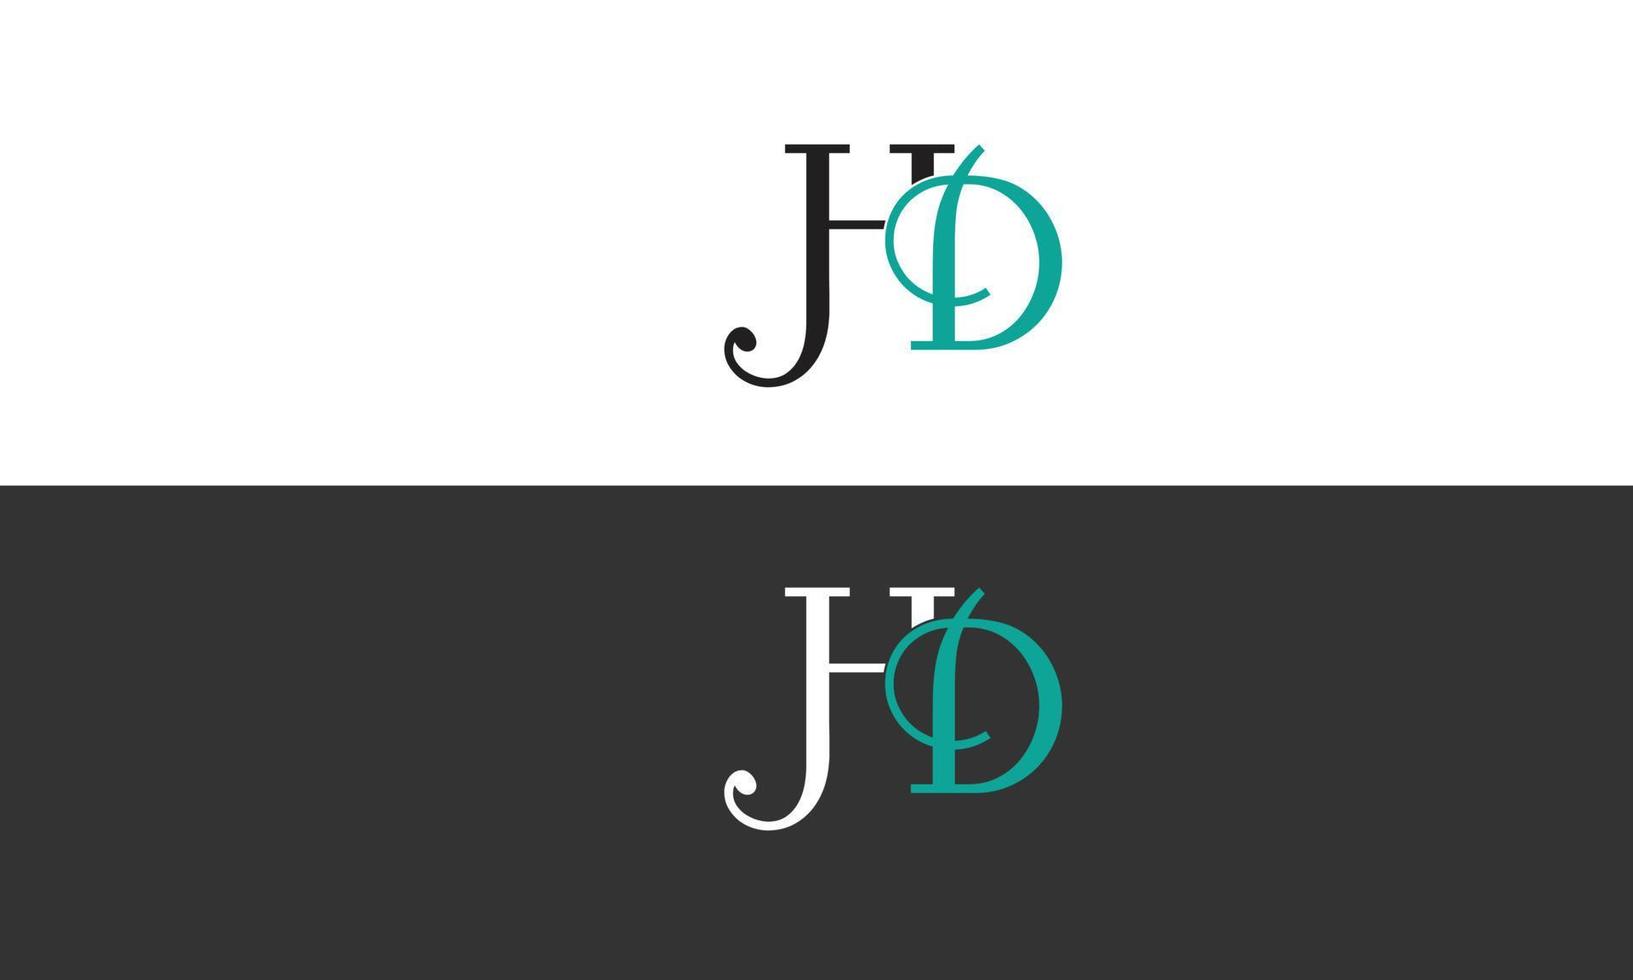 letras do alfabeto iniciais monograma logotipo hd, dh, h e d vetor